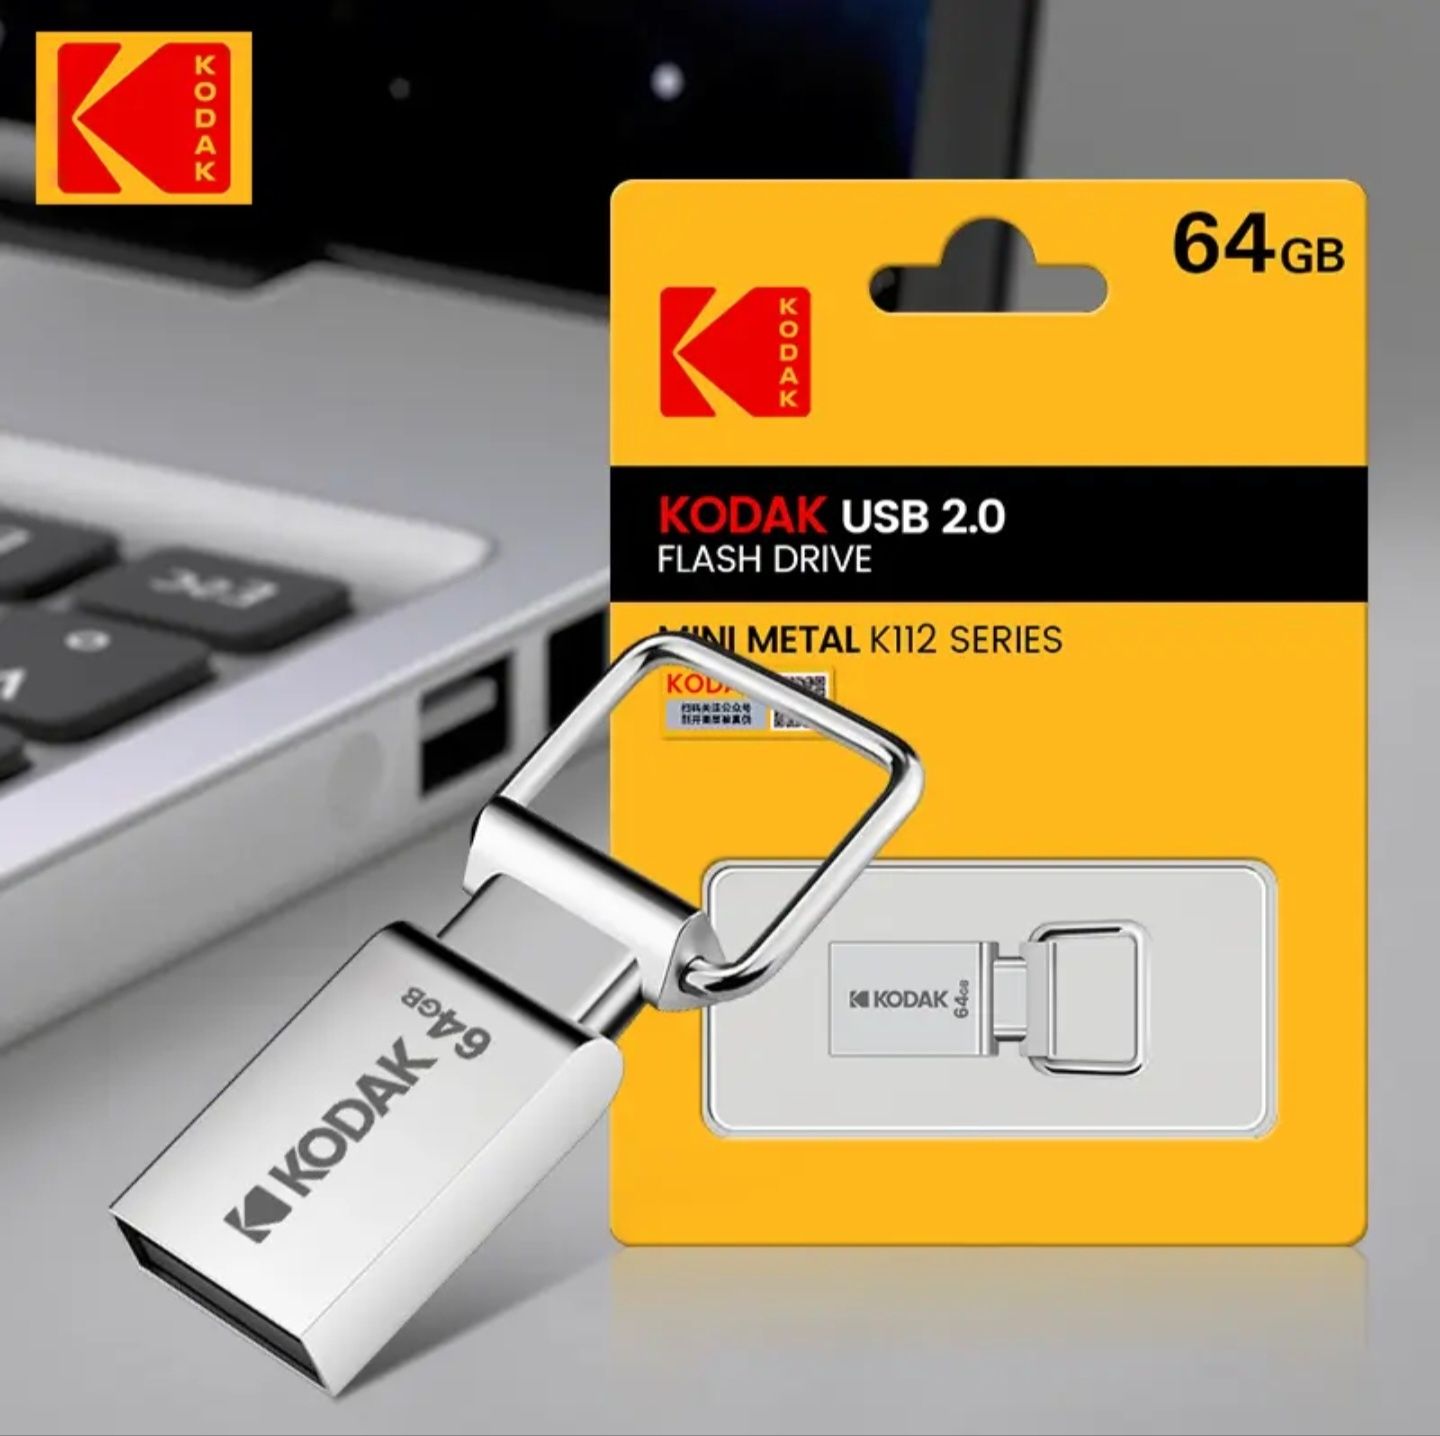 Kodak USB 2.0 64GB